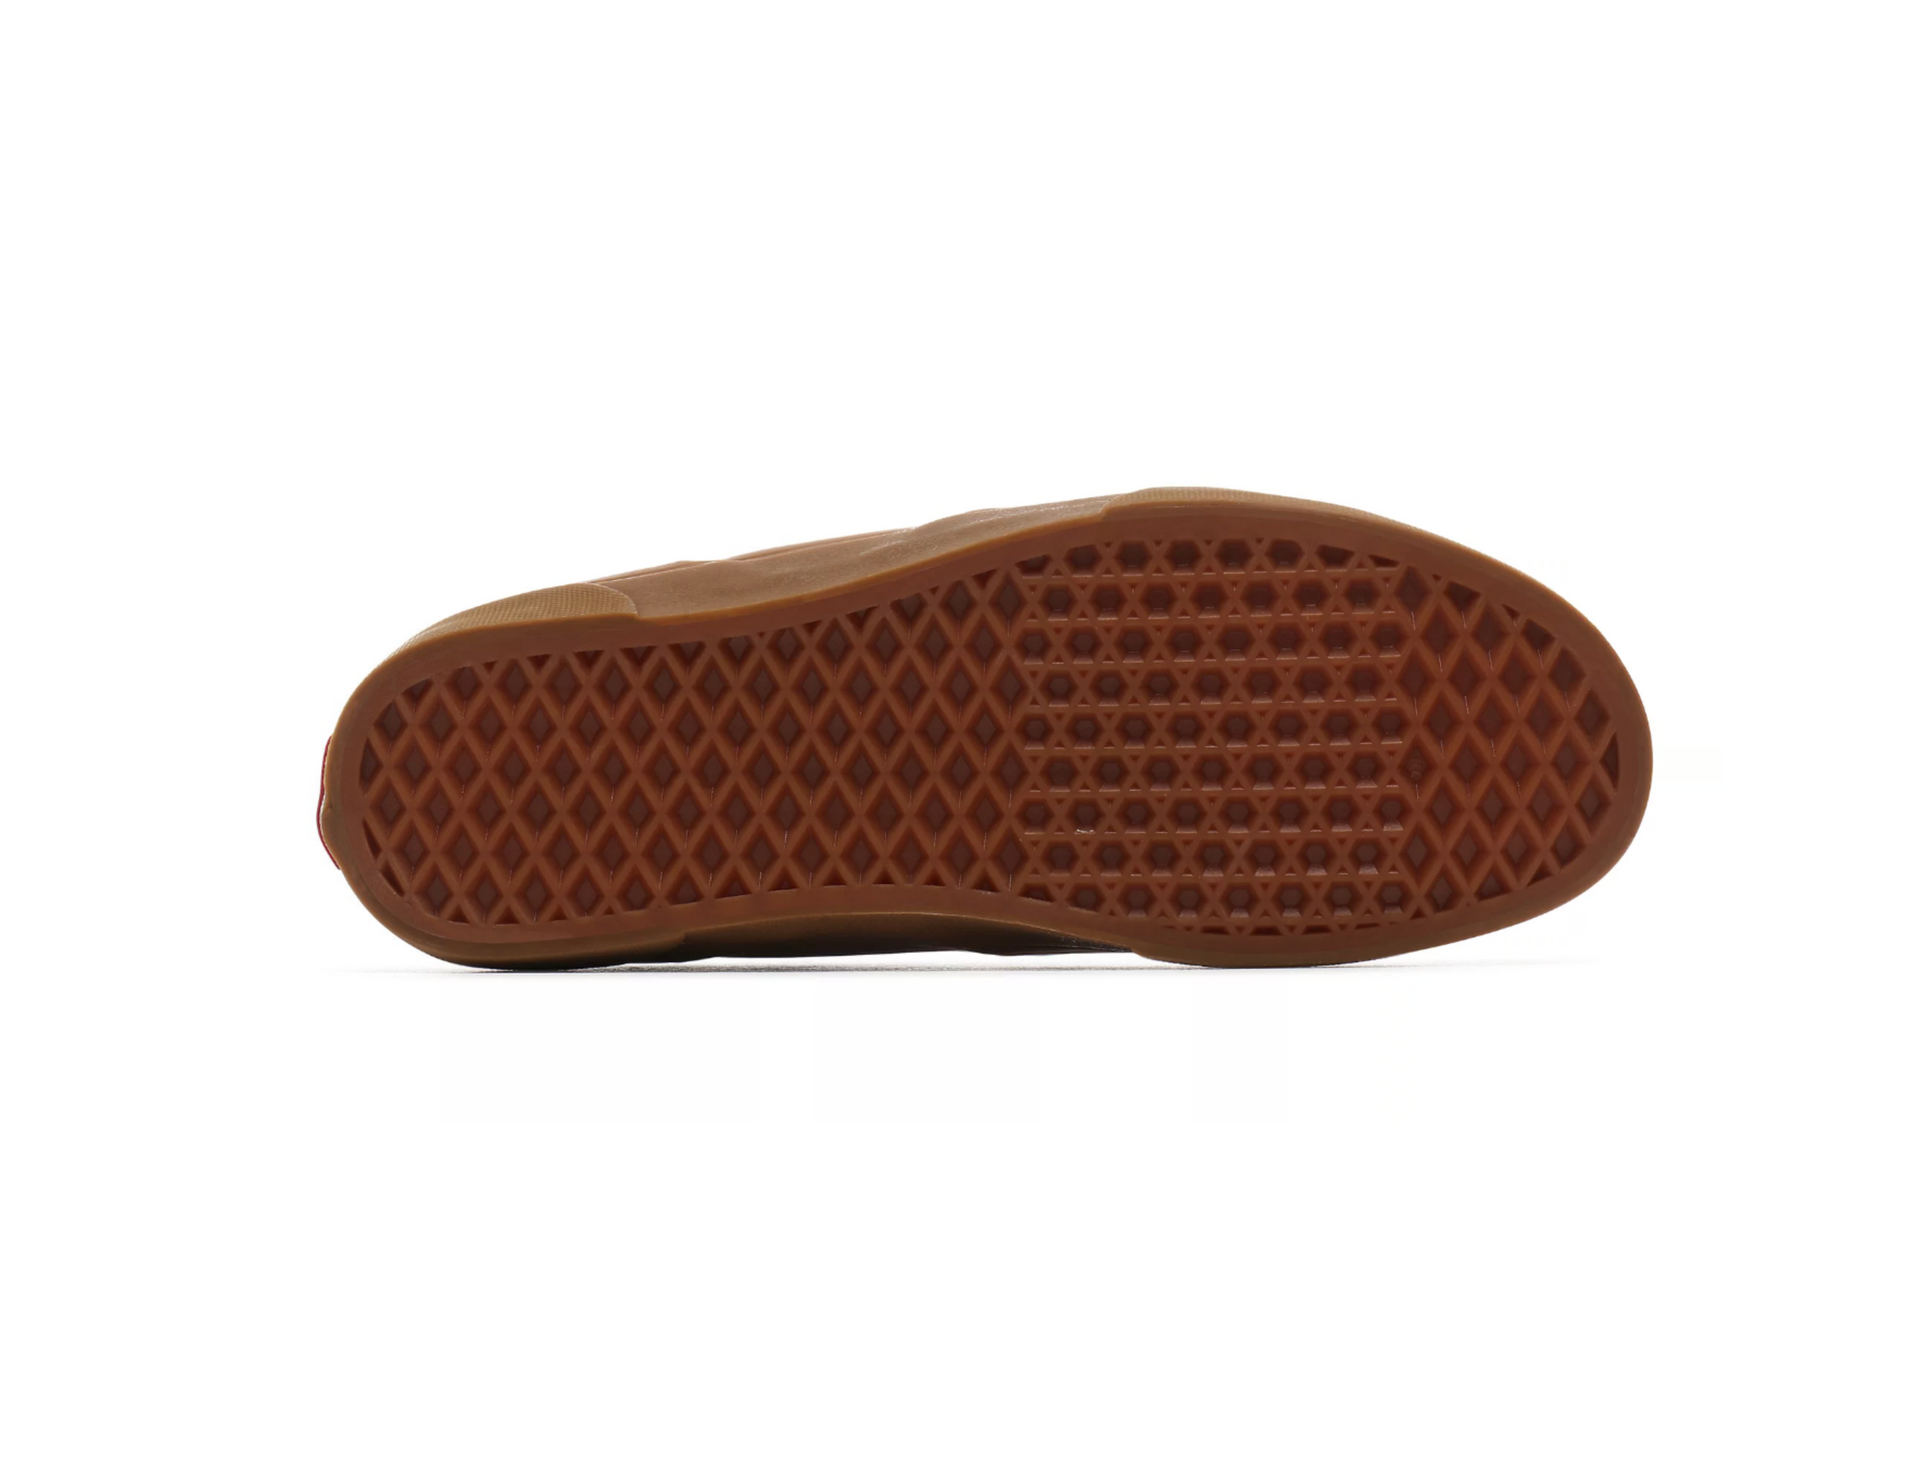 Vans Rowley Classic Shoe - White / Gum - Directive Boardshop